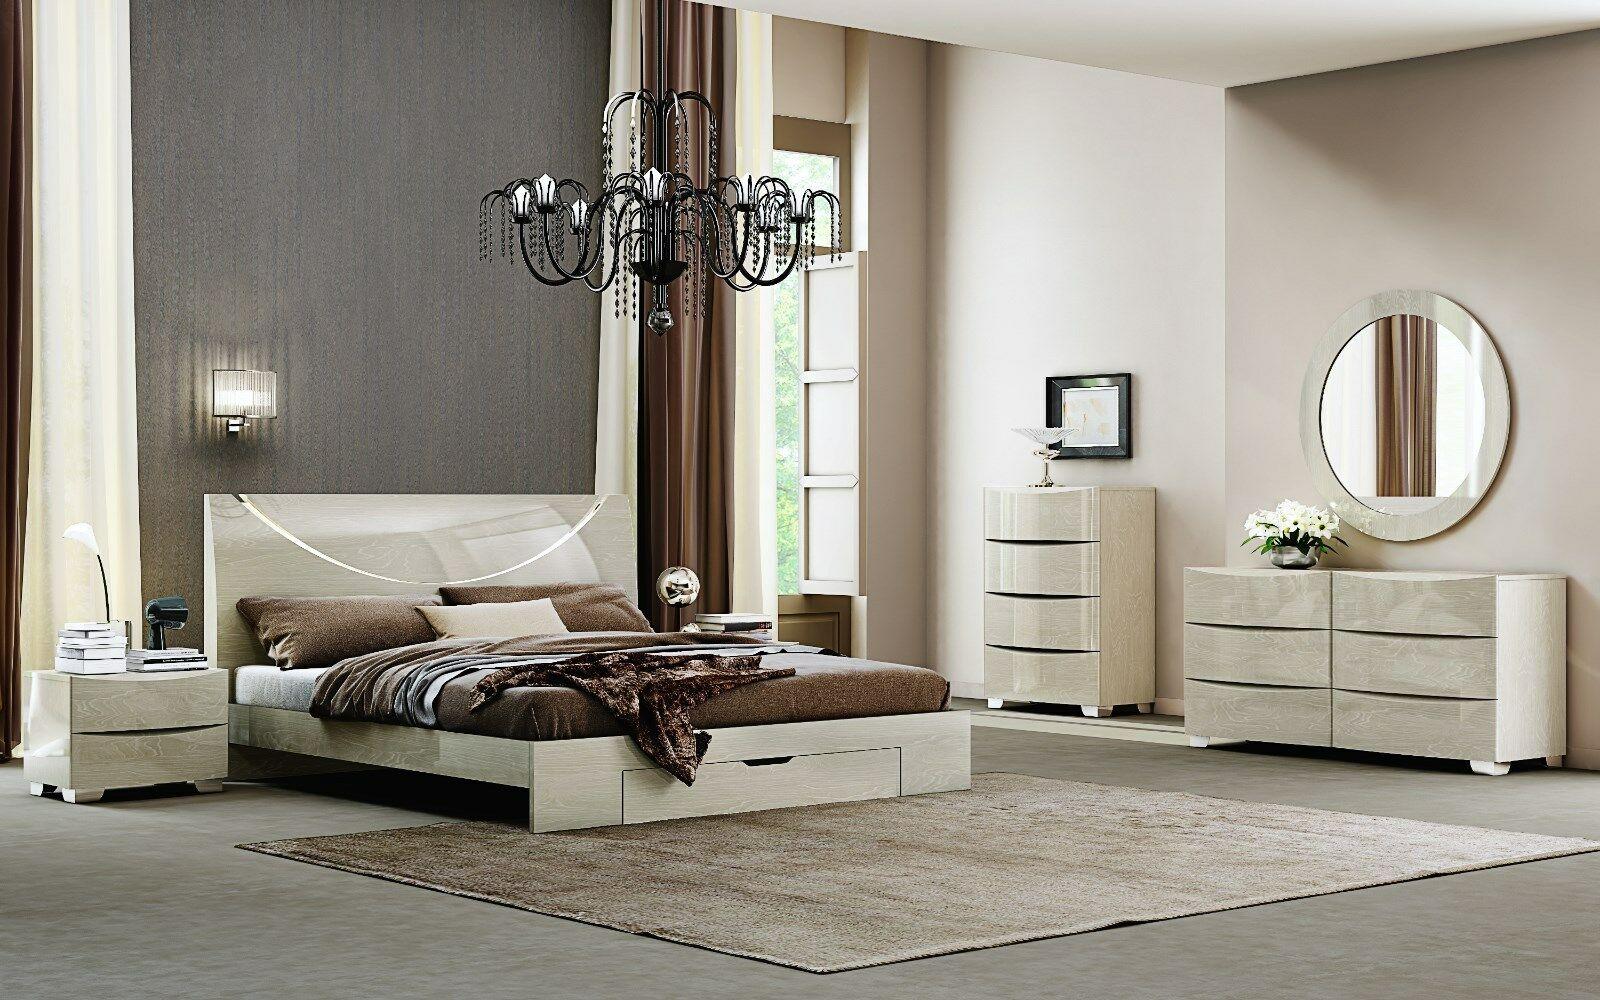 Modern Platform Bedroom Set NOLA-LIGHT WALNUT NOLA-LIGHT WALNUT-EK-5-PC in Light Walnut Lacquer